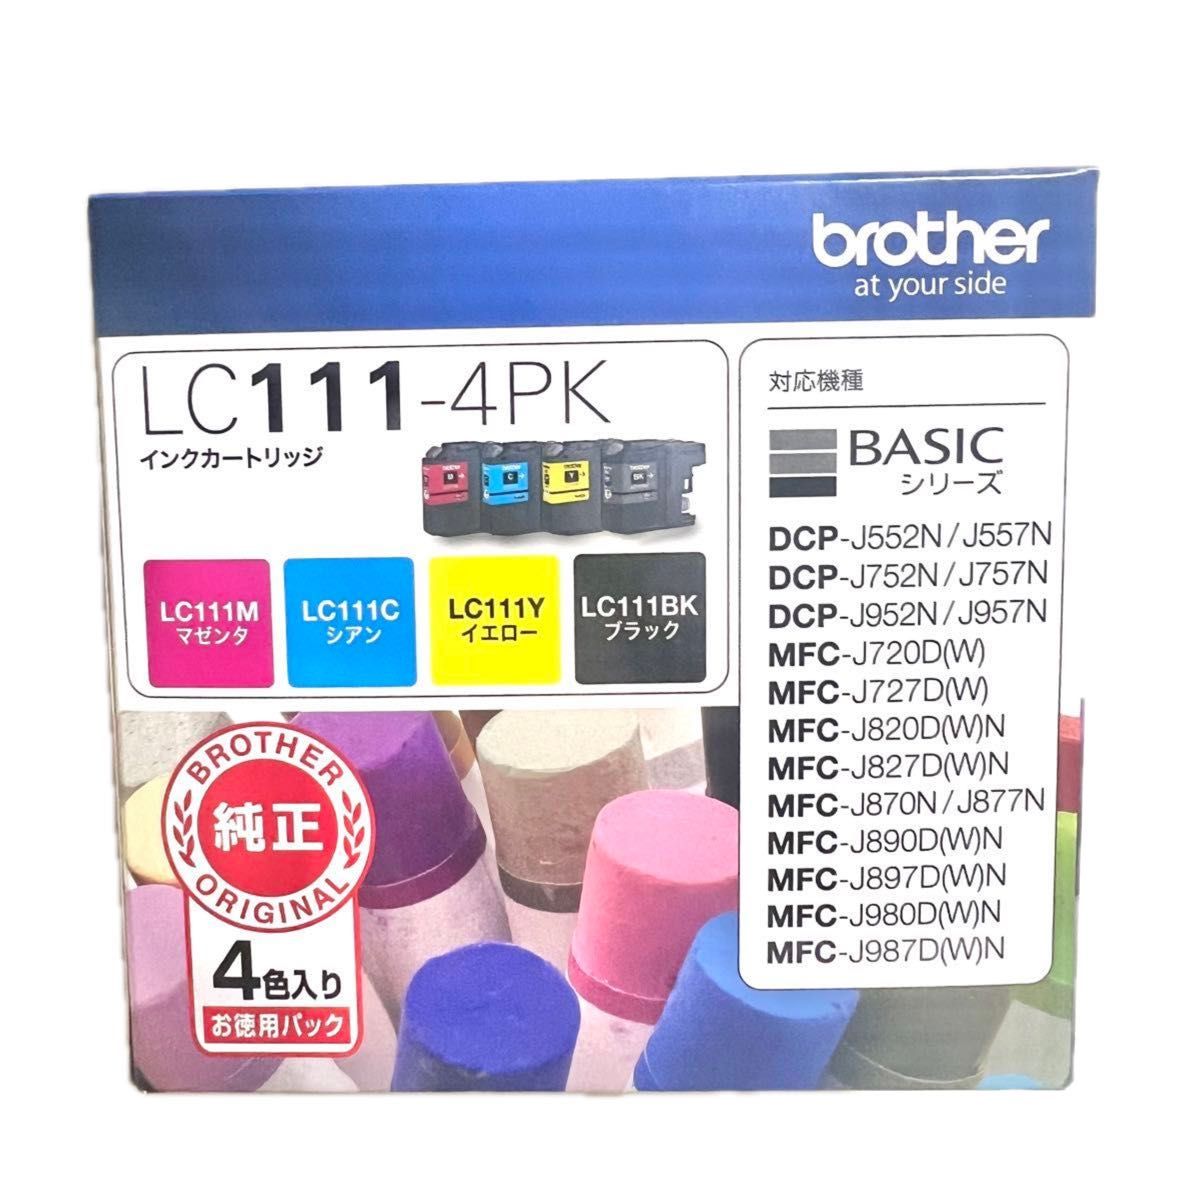 2個セット 新品 未使用  純正 LC111-4PK インクカートリッジ お徳用4色パック ブラザー brother イノベラ